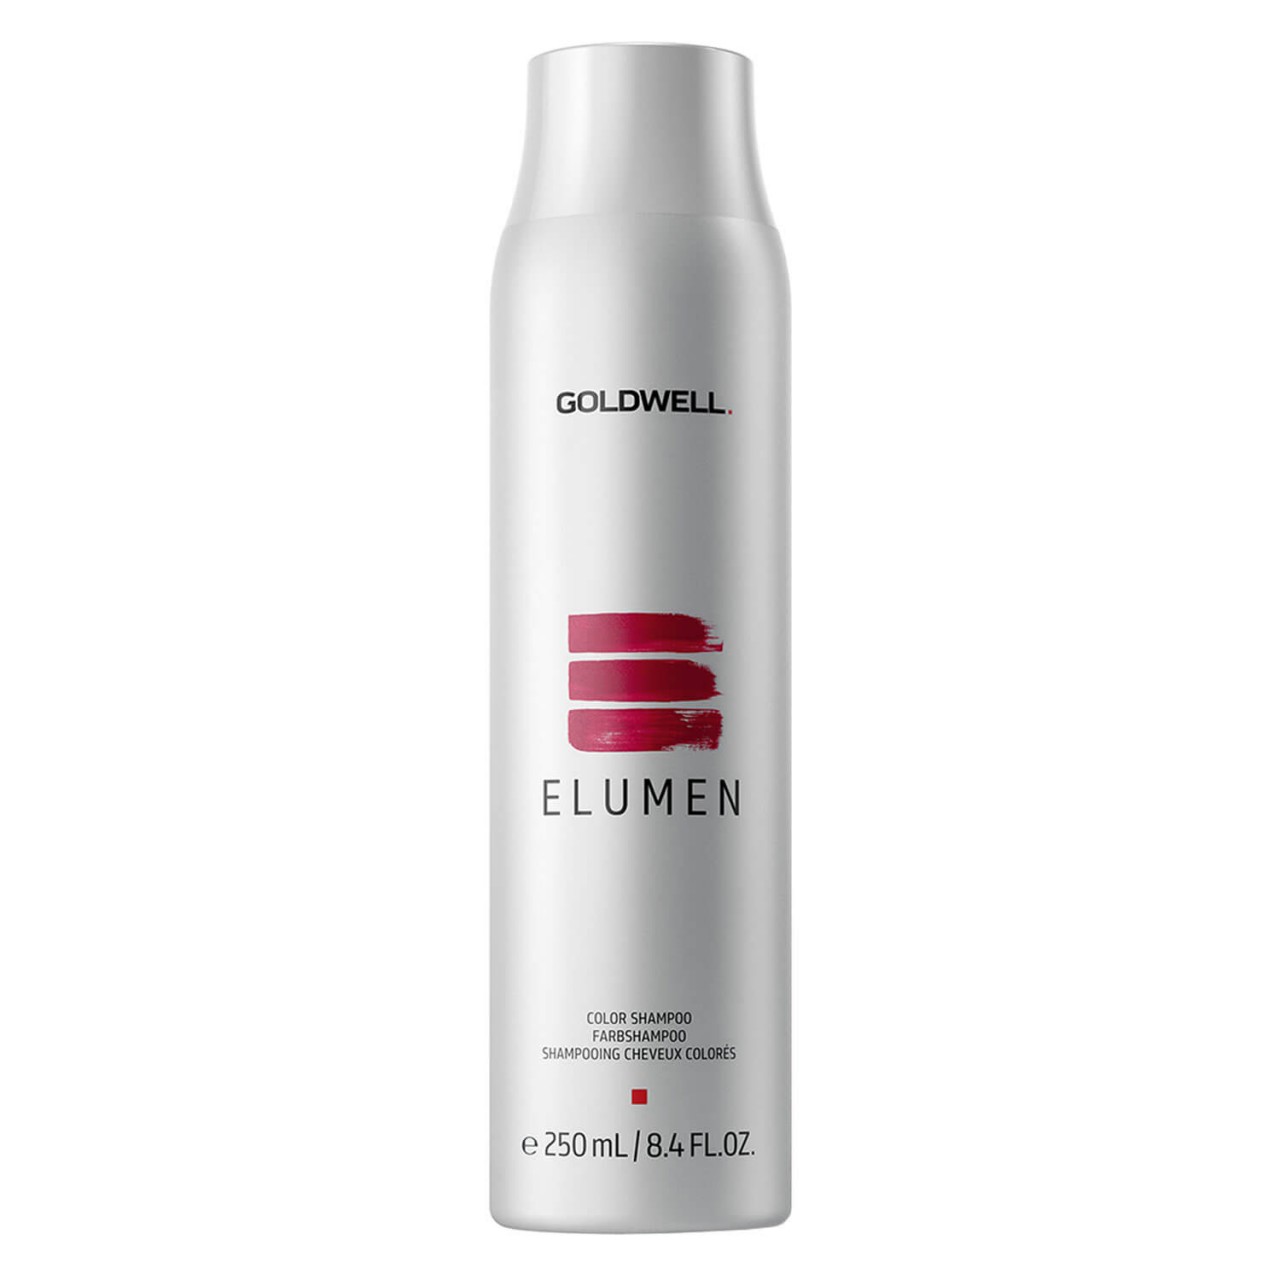 Elumen - Color Shampoo von Goldwell